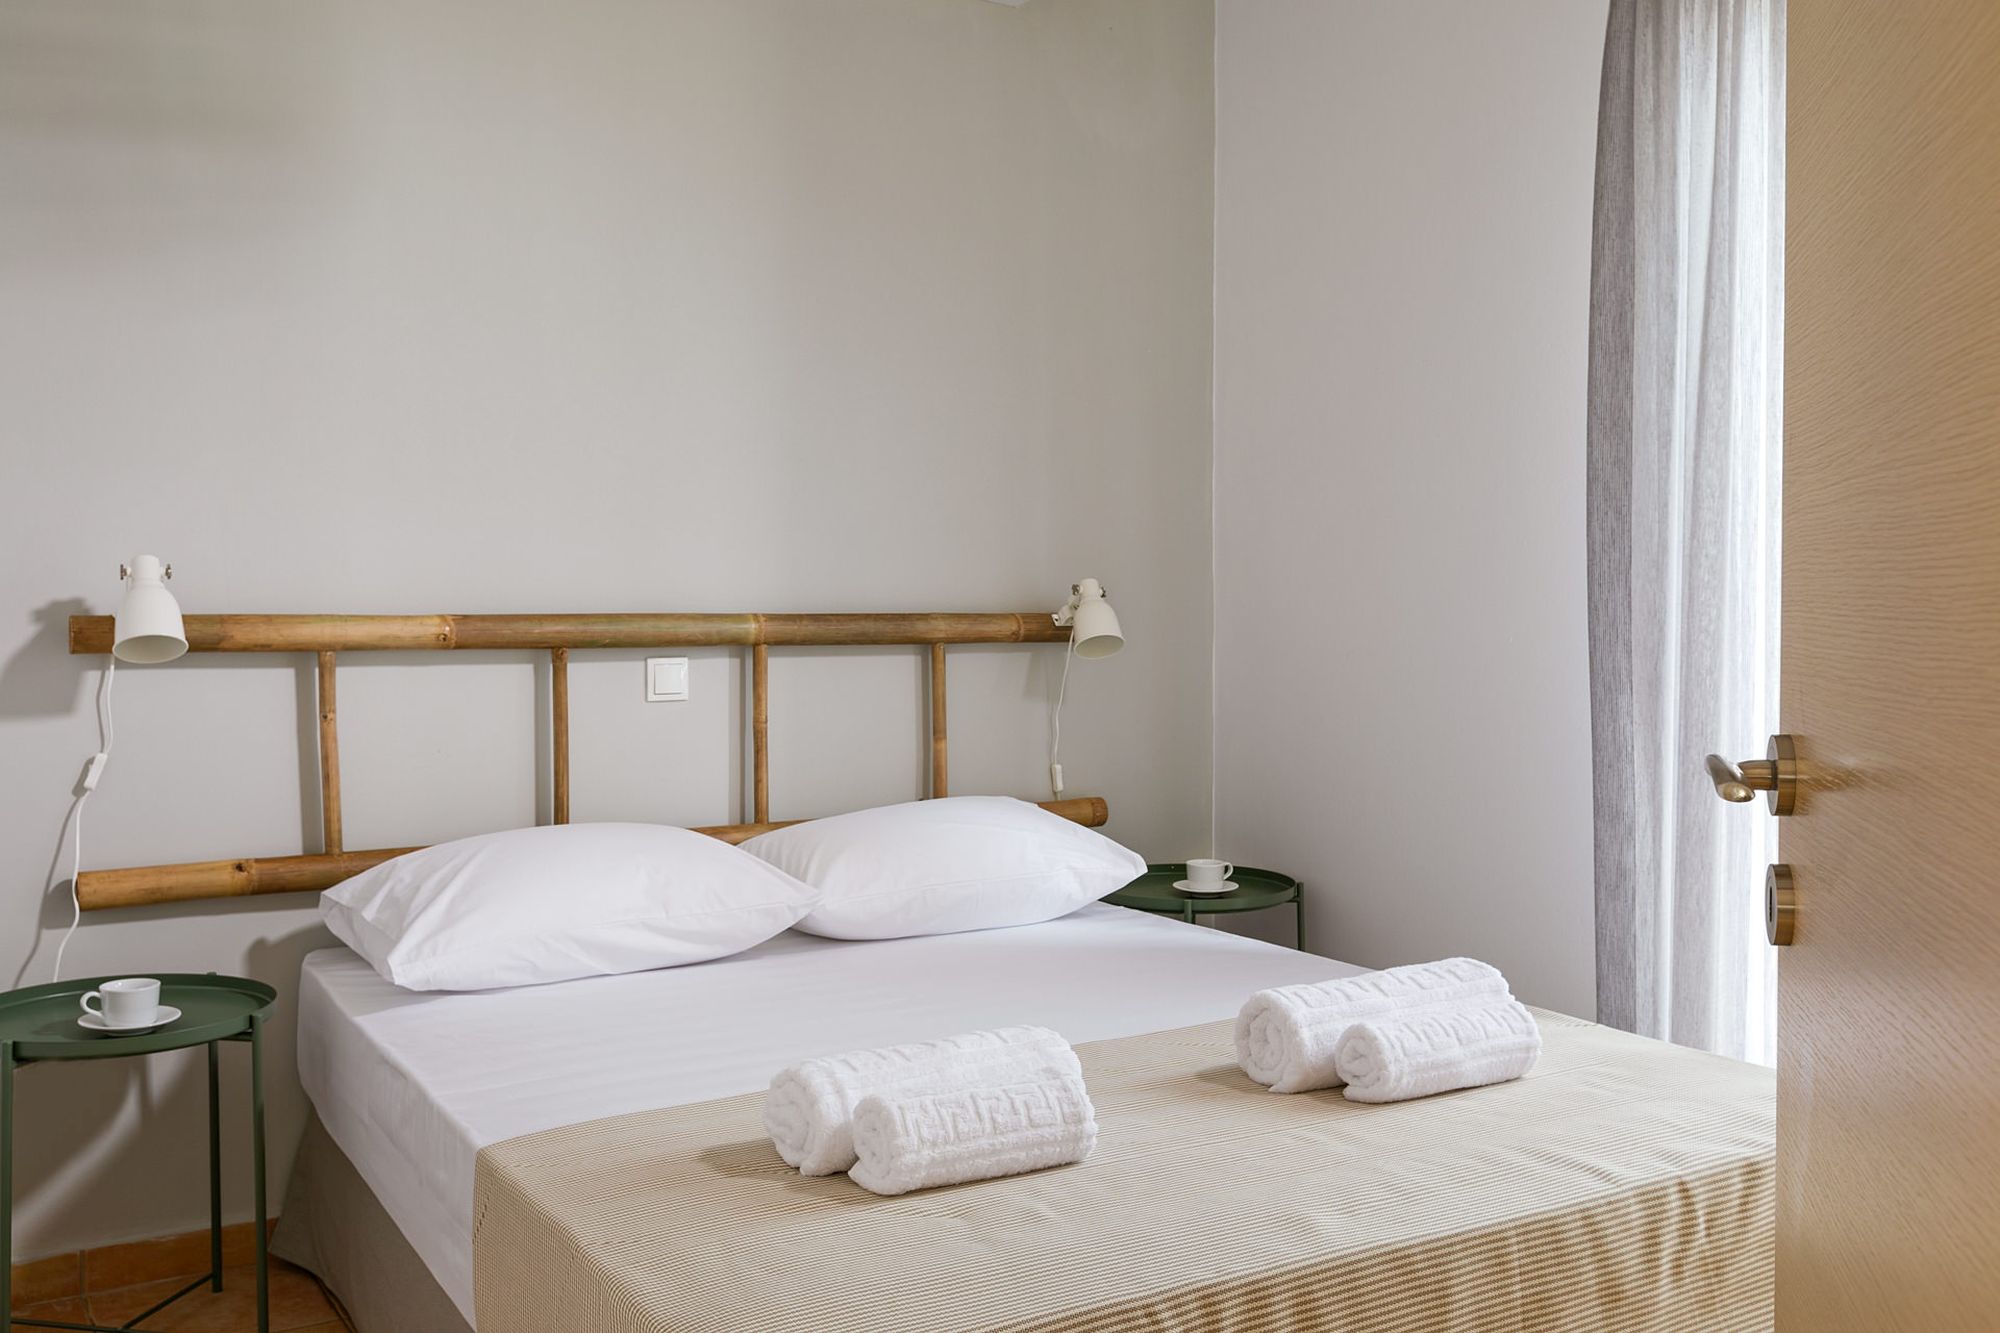 Υπνοδωμάτιο με διπλό κρεβάτι, μεταλλικά πράσινα κομοδίνα, μοντέρνα λευκά σποτάκια και διακοσμητική ξύλινη σκάλα στον τοίχο πάνω από το κρεβάτι.